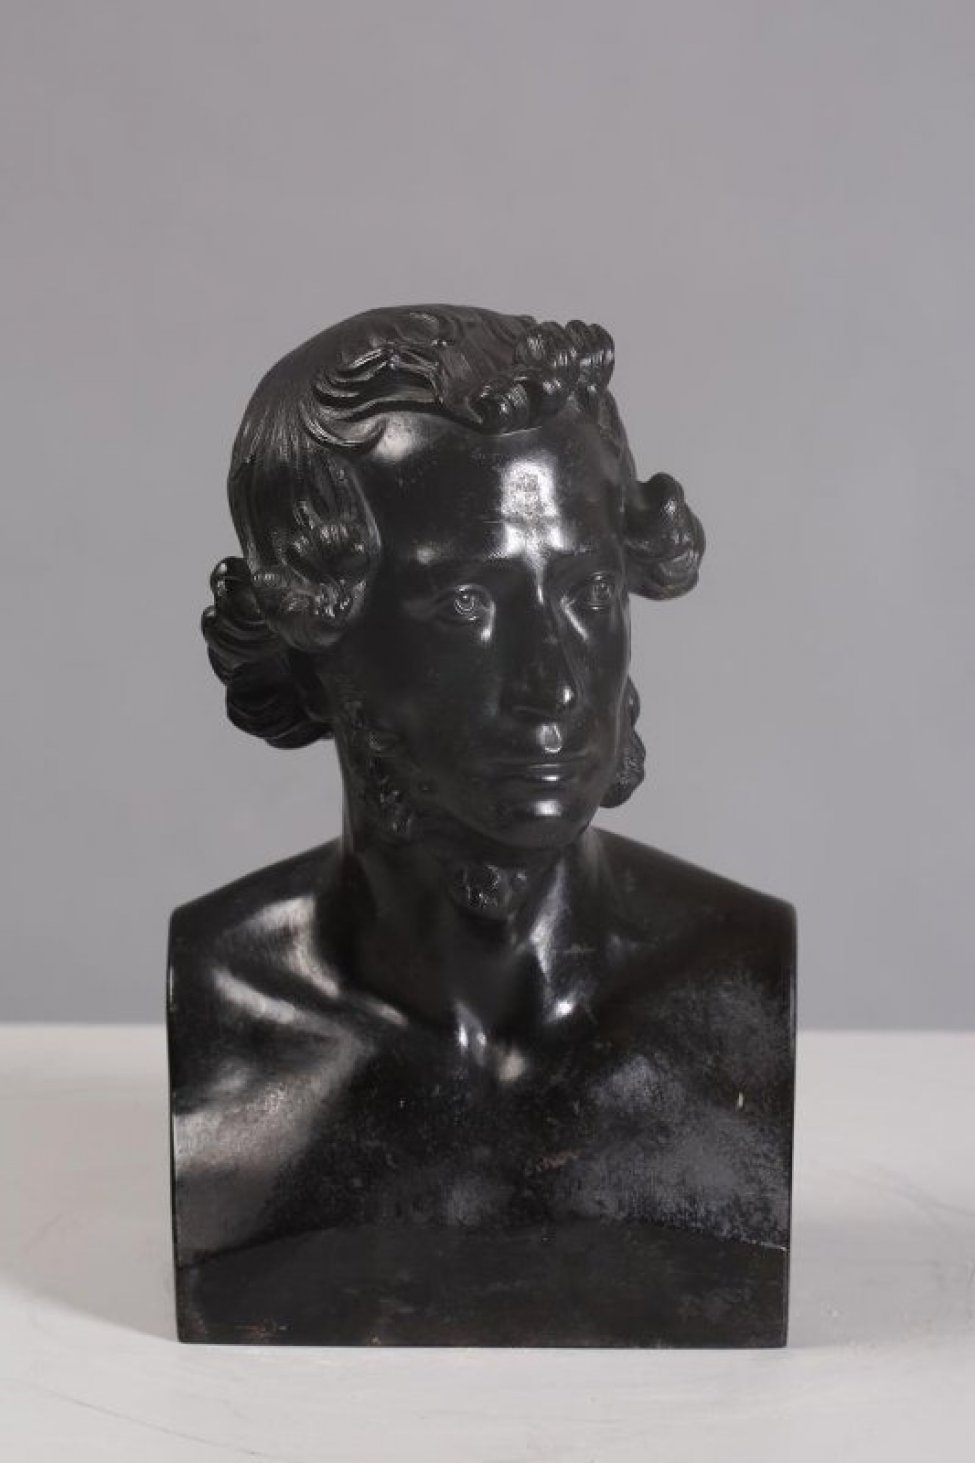 Изображен погрудно  А.С. Пушкин, с пышными кудрявыми волосами, на лице баки. Голова повернута немного вправо.